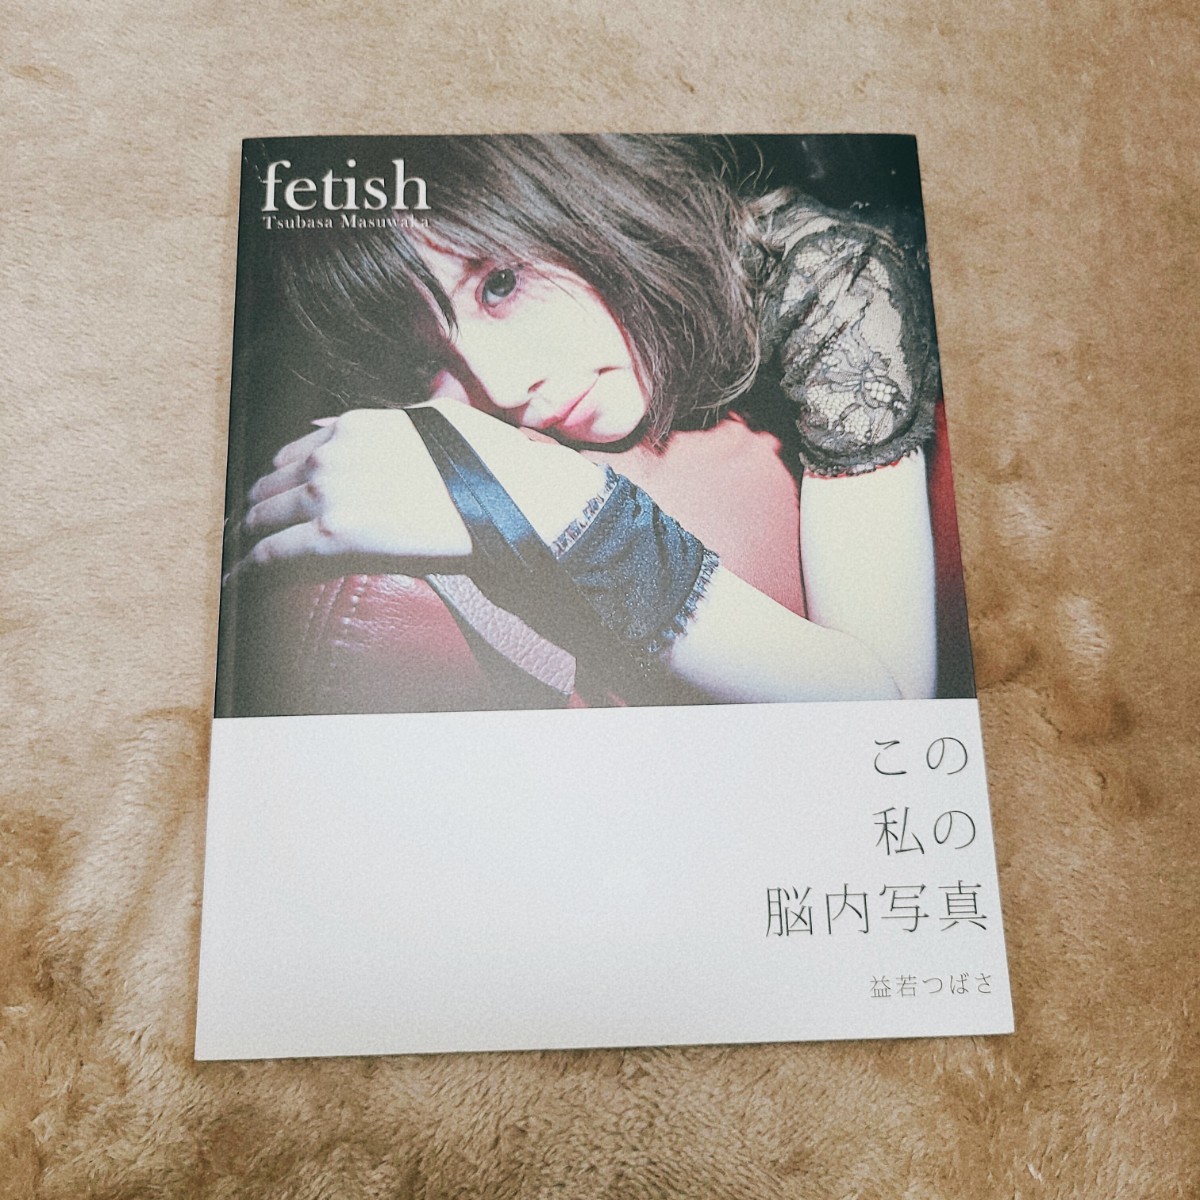 【写真集】fetish : 益若つばさ 本